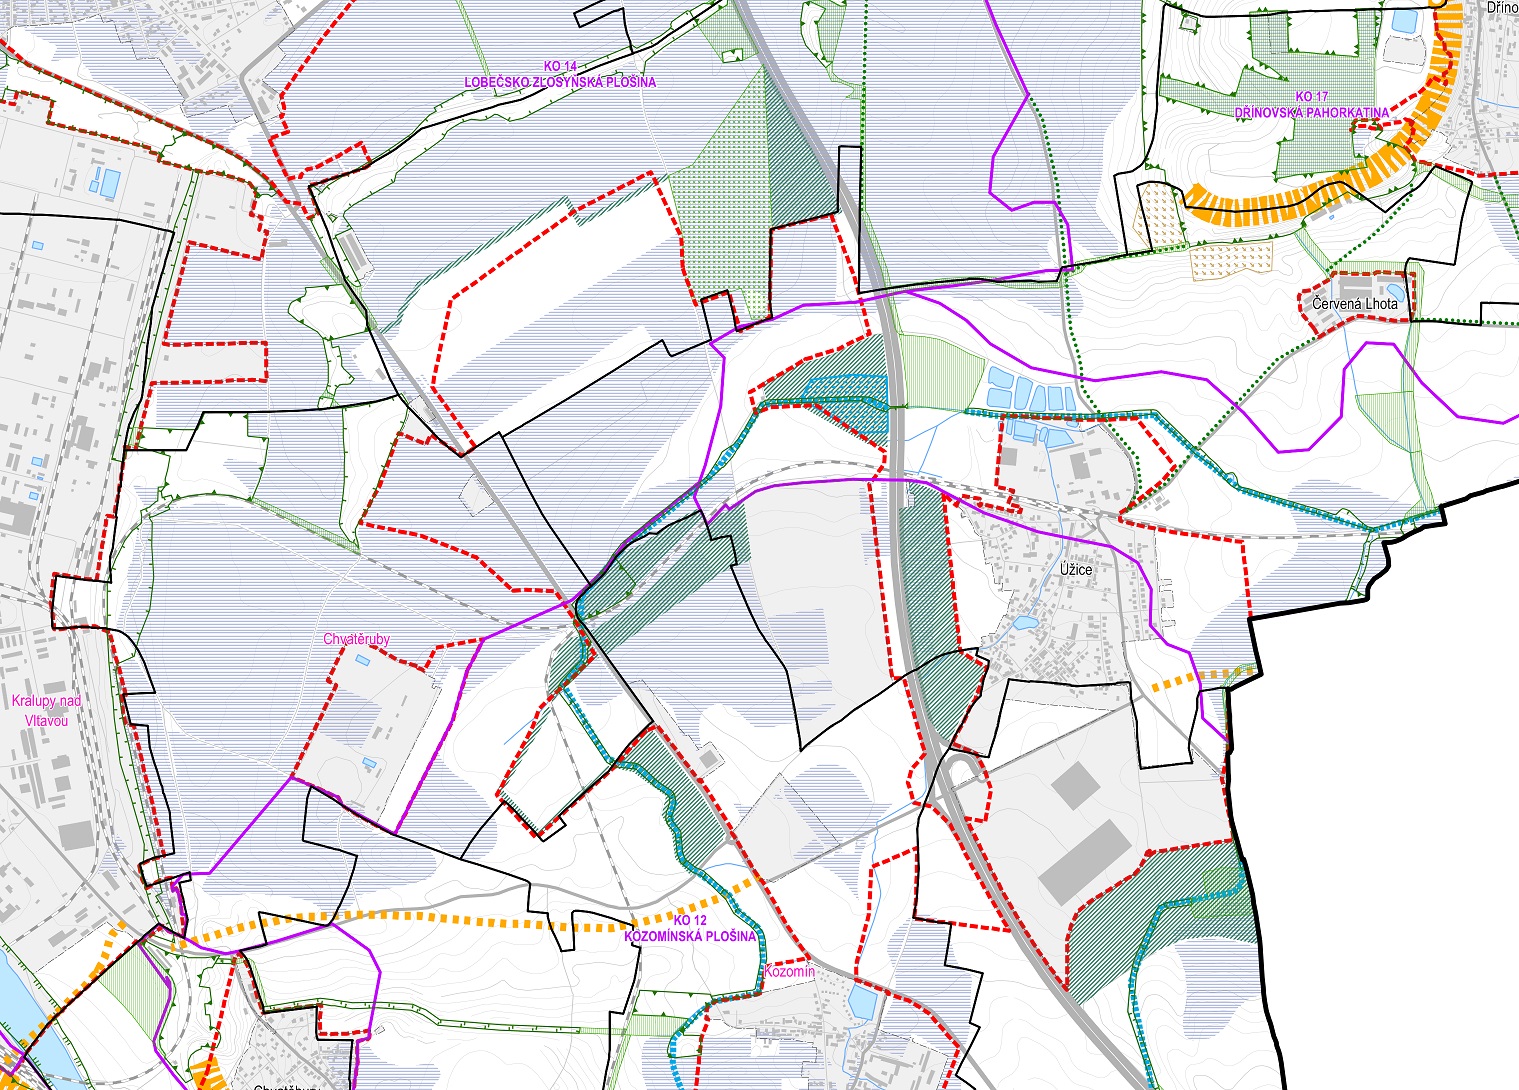 Obr. 3: Výřez hlavního výkresu územní studie krajiny správního obvodu ORP Kralupy nad Vltavou, kde jsou vyznačeny požadované plochy zeleně v intenzivně zastavěném území logistických center.